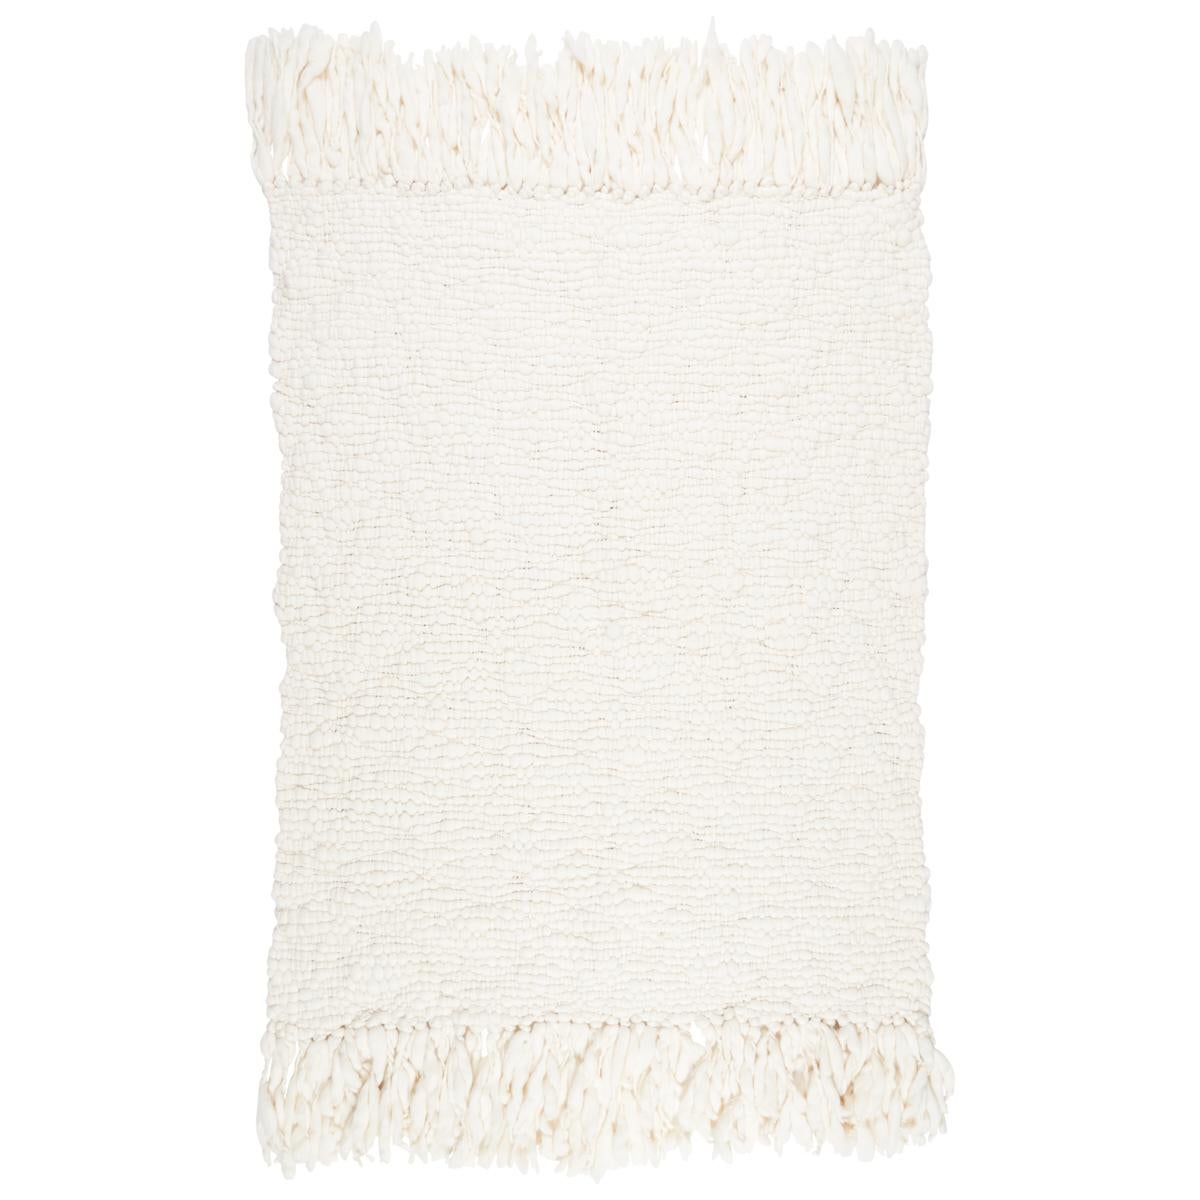 Des volumes de laine mérinos super fine ont été tricotés de manière lâche pour former des nœuds épais qui ressemblent à des nuages luxuriants et duveteux. Tricoté à la main en Argentine et terminé par d'épaisses franges, le plaid en laine Cloud est